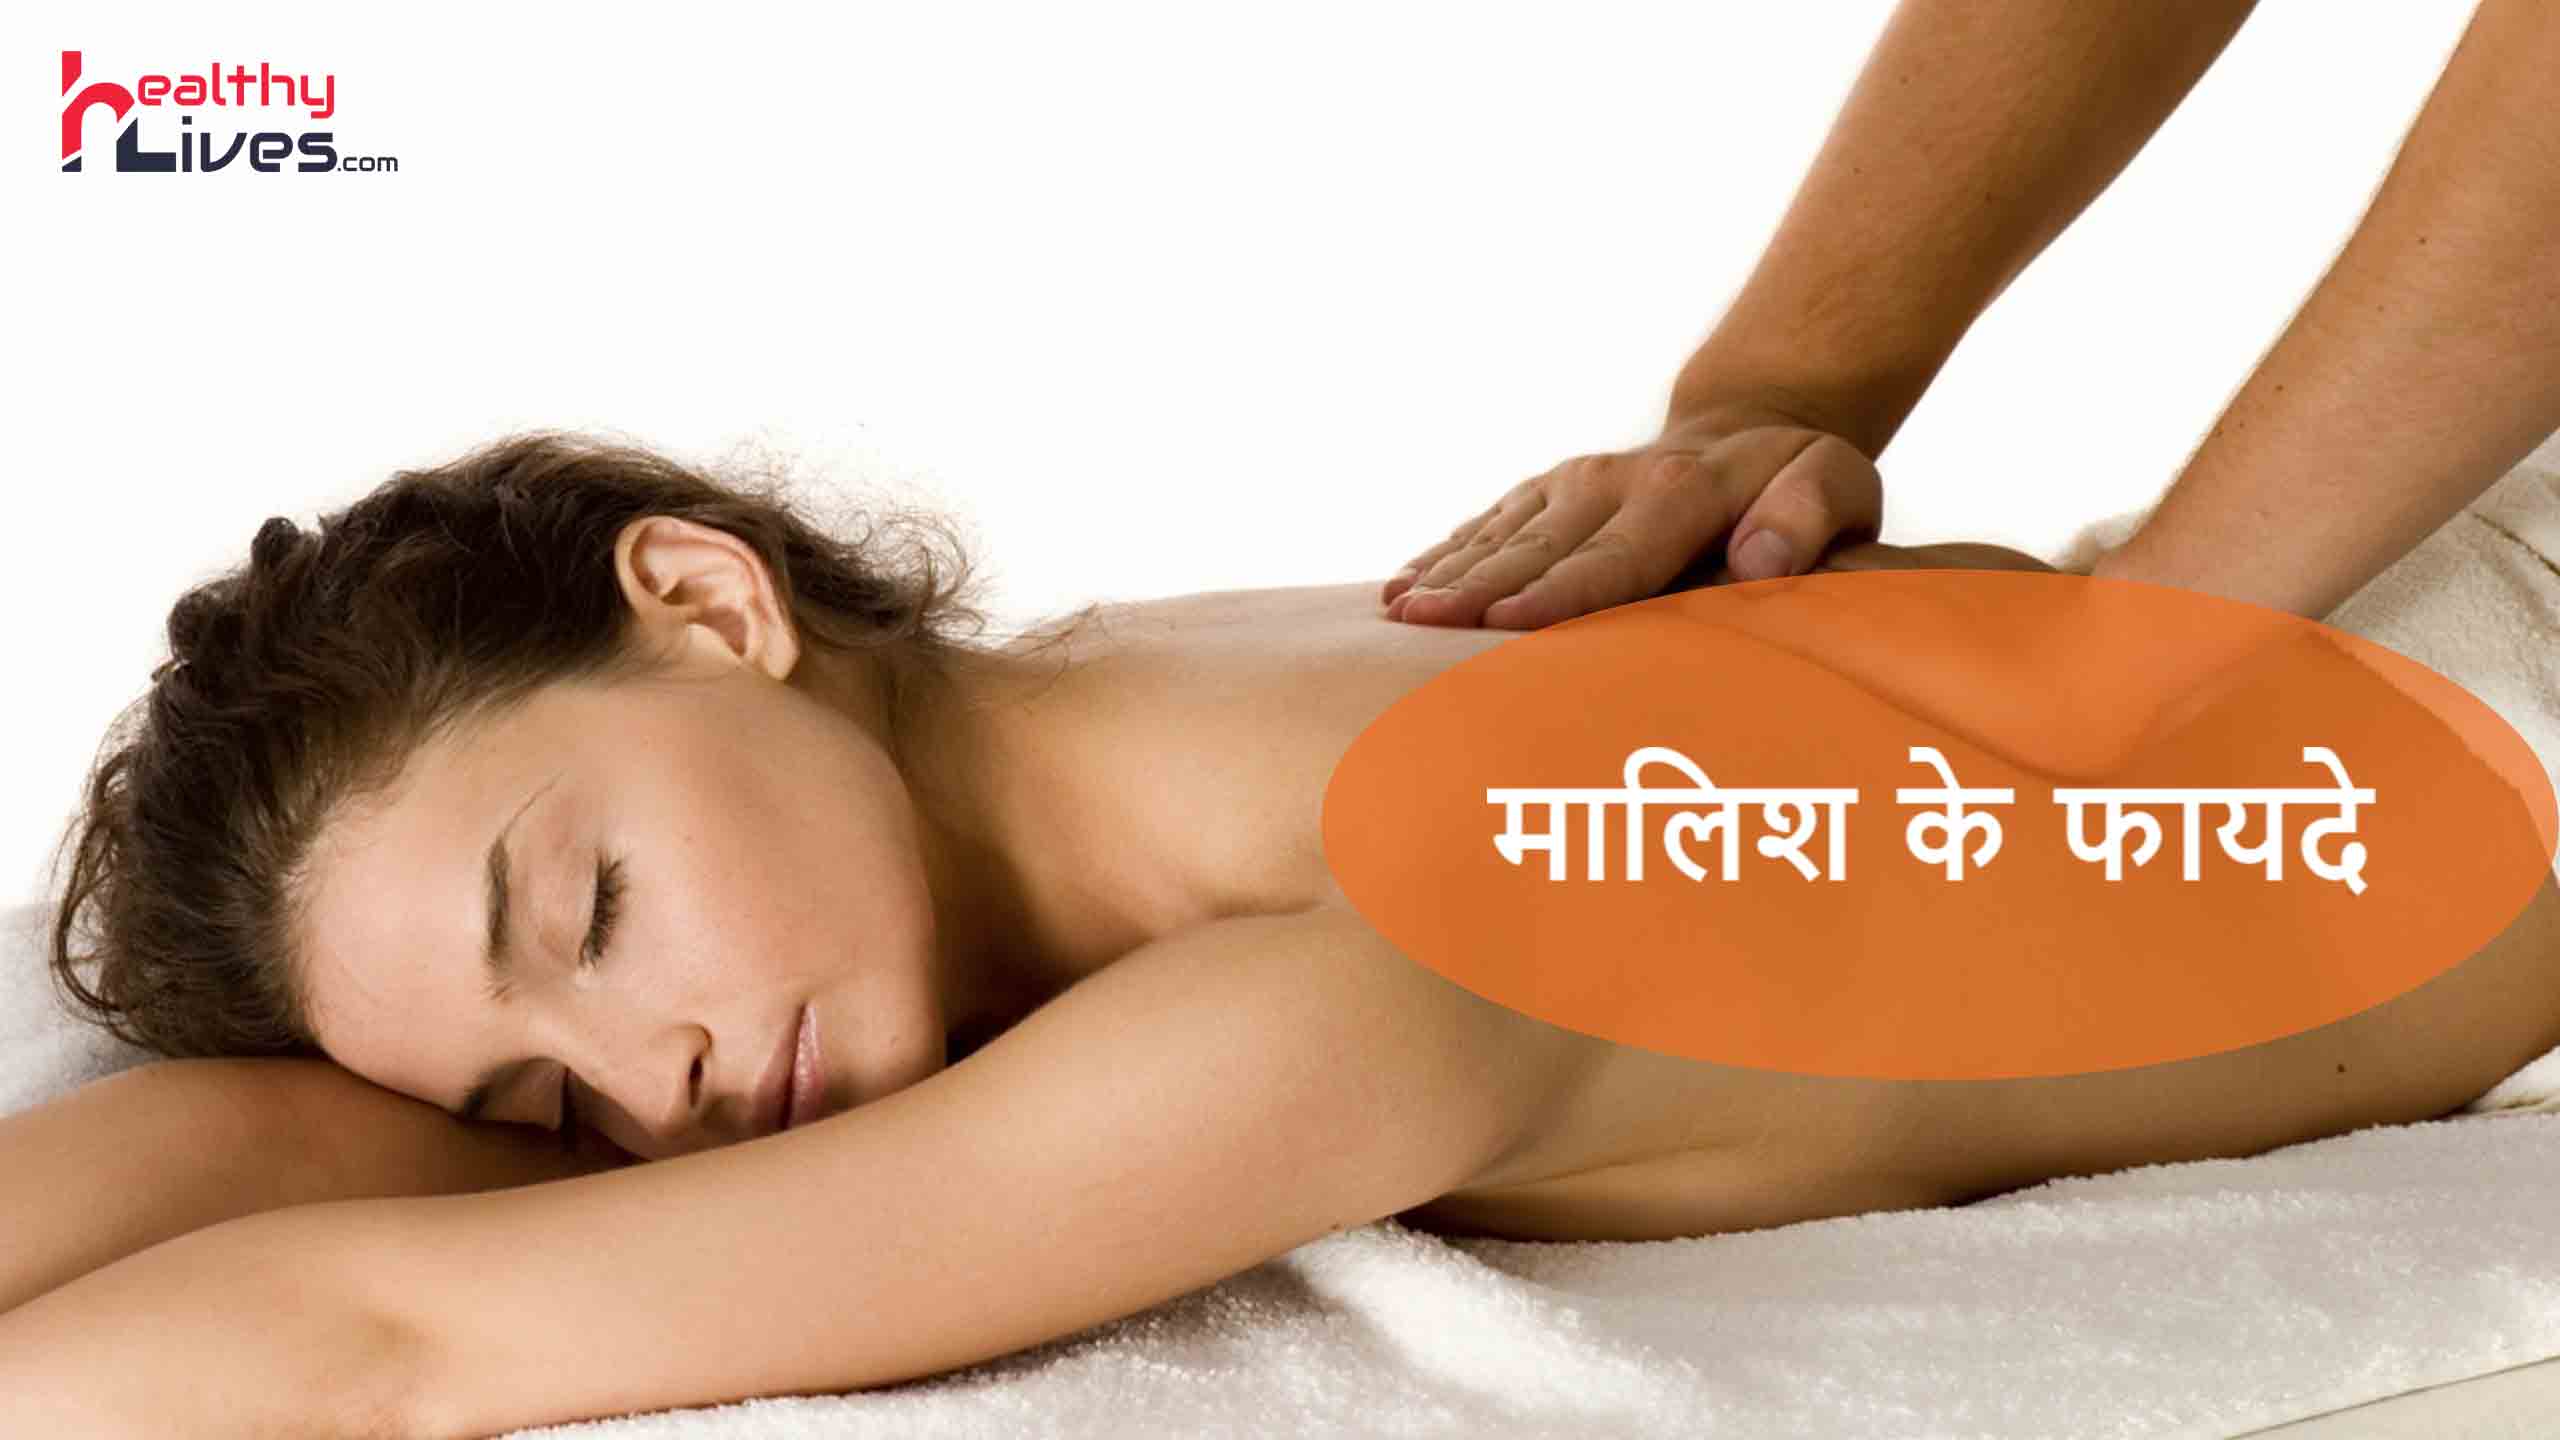 Health Benefit of Massage in Hindi:मालिश से मिलते है शरीर को अनेक लाभ